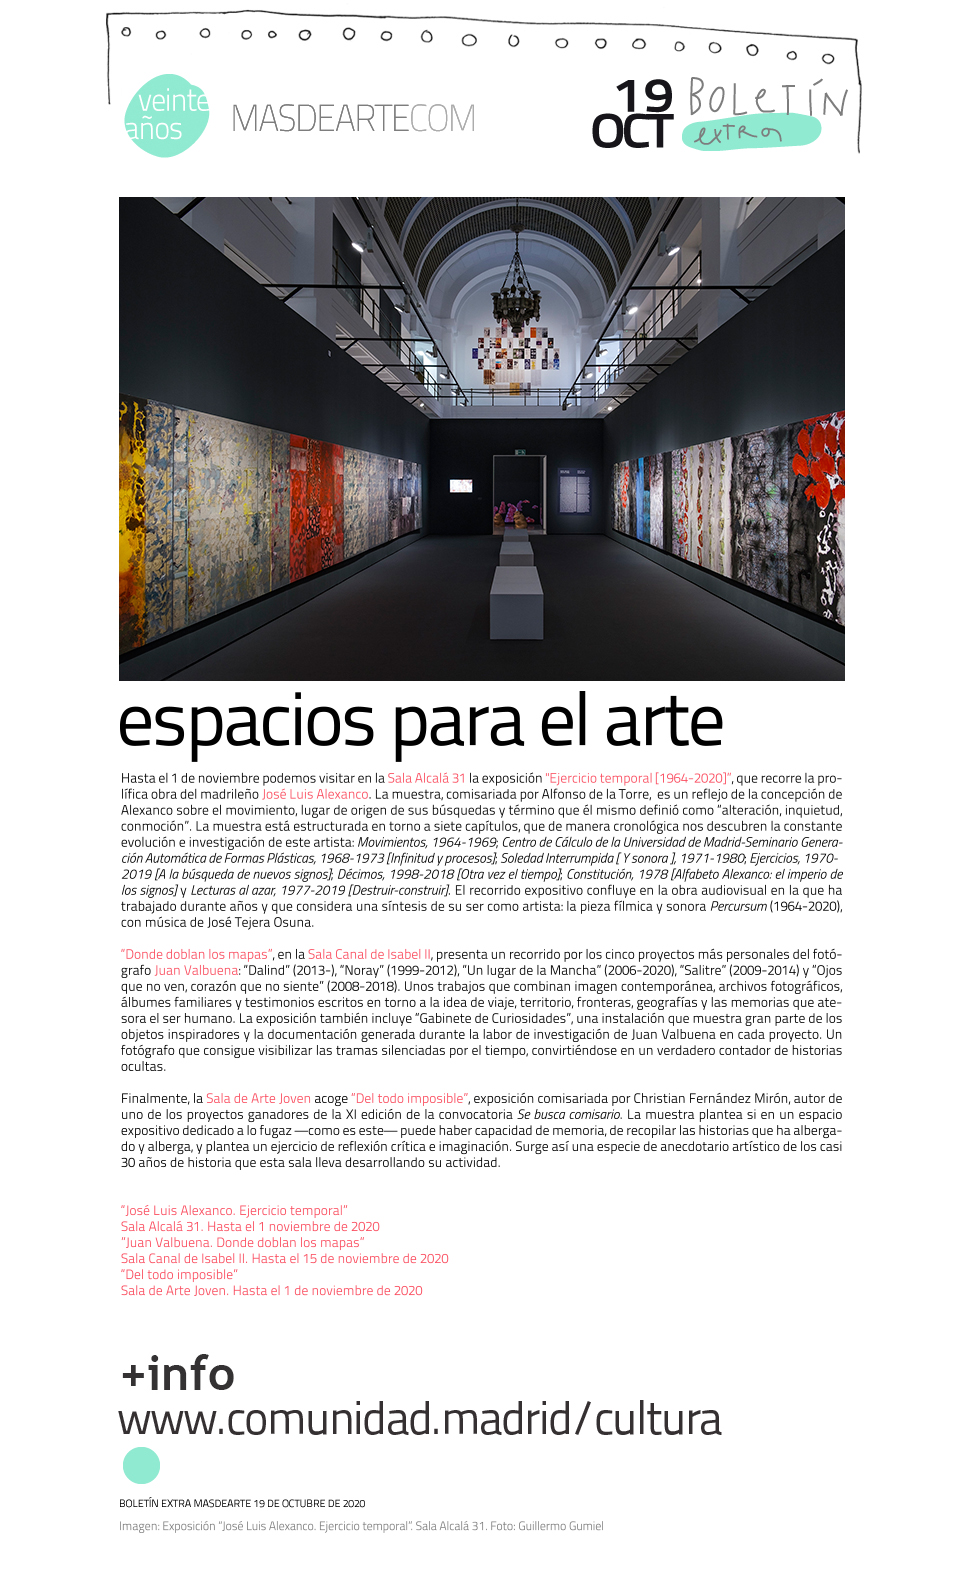 Programación en los Espacios para el Arte de la Comunidad de Madrid:
 Sala Alcalá 31, Sala Canal de Isabel II y Sala de Arte Joven de la Comunidad de Madrid